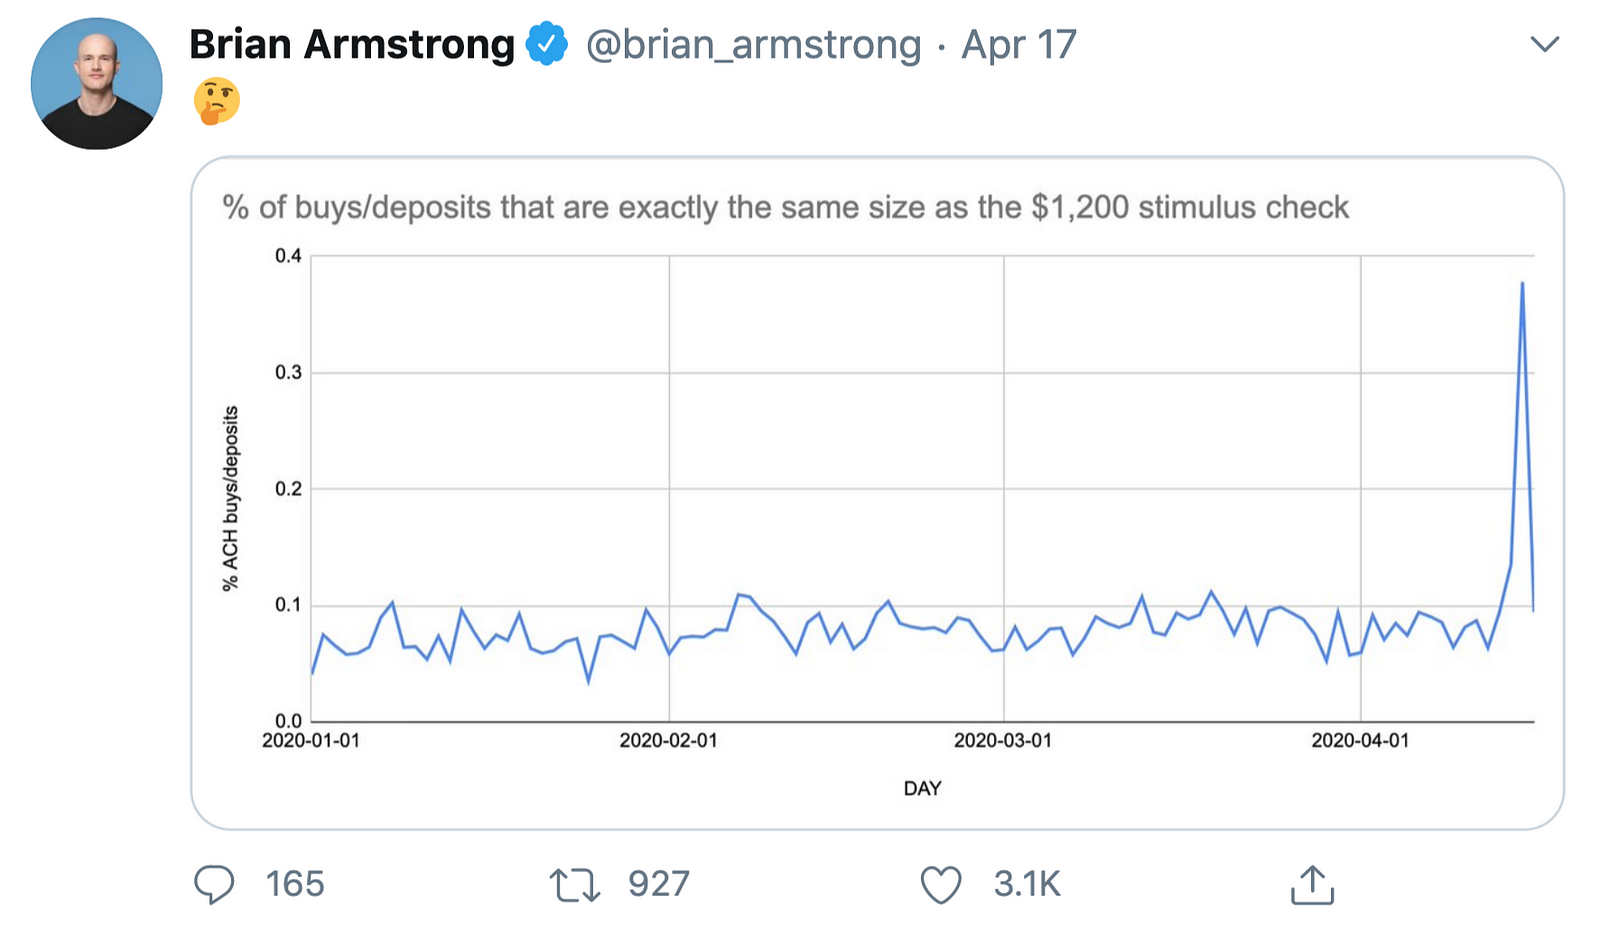 Tweet de Brian Armstrong confirmant une augmentation des dépôts de $1,200